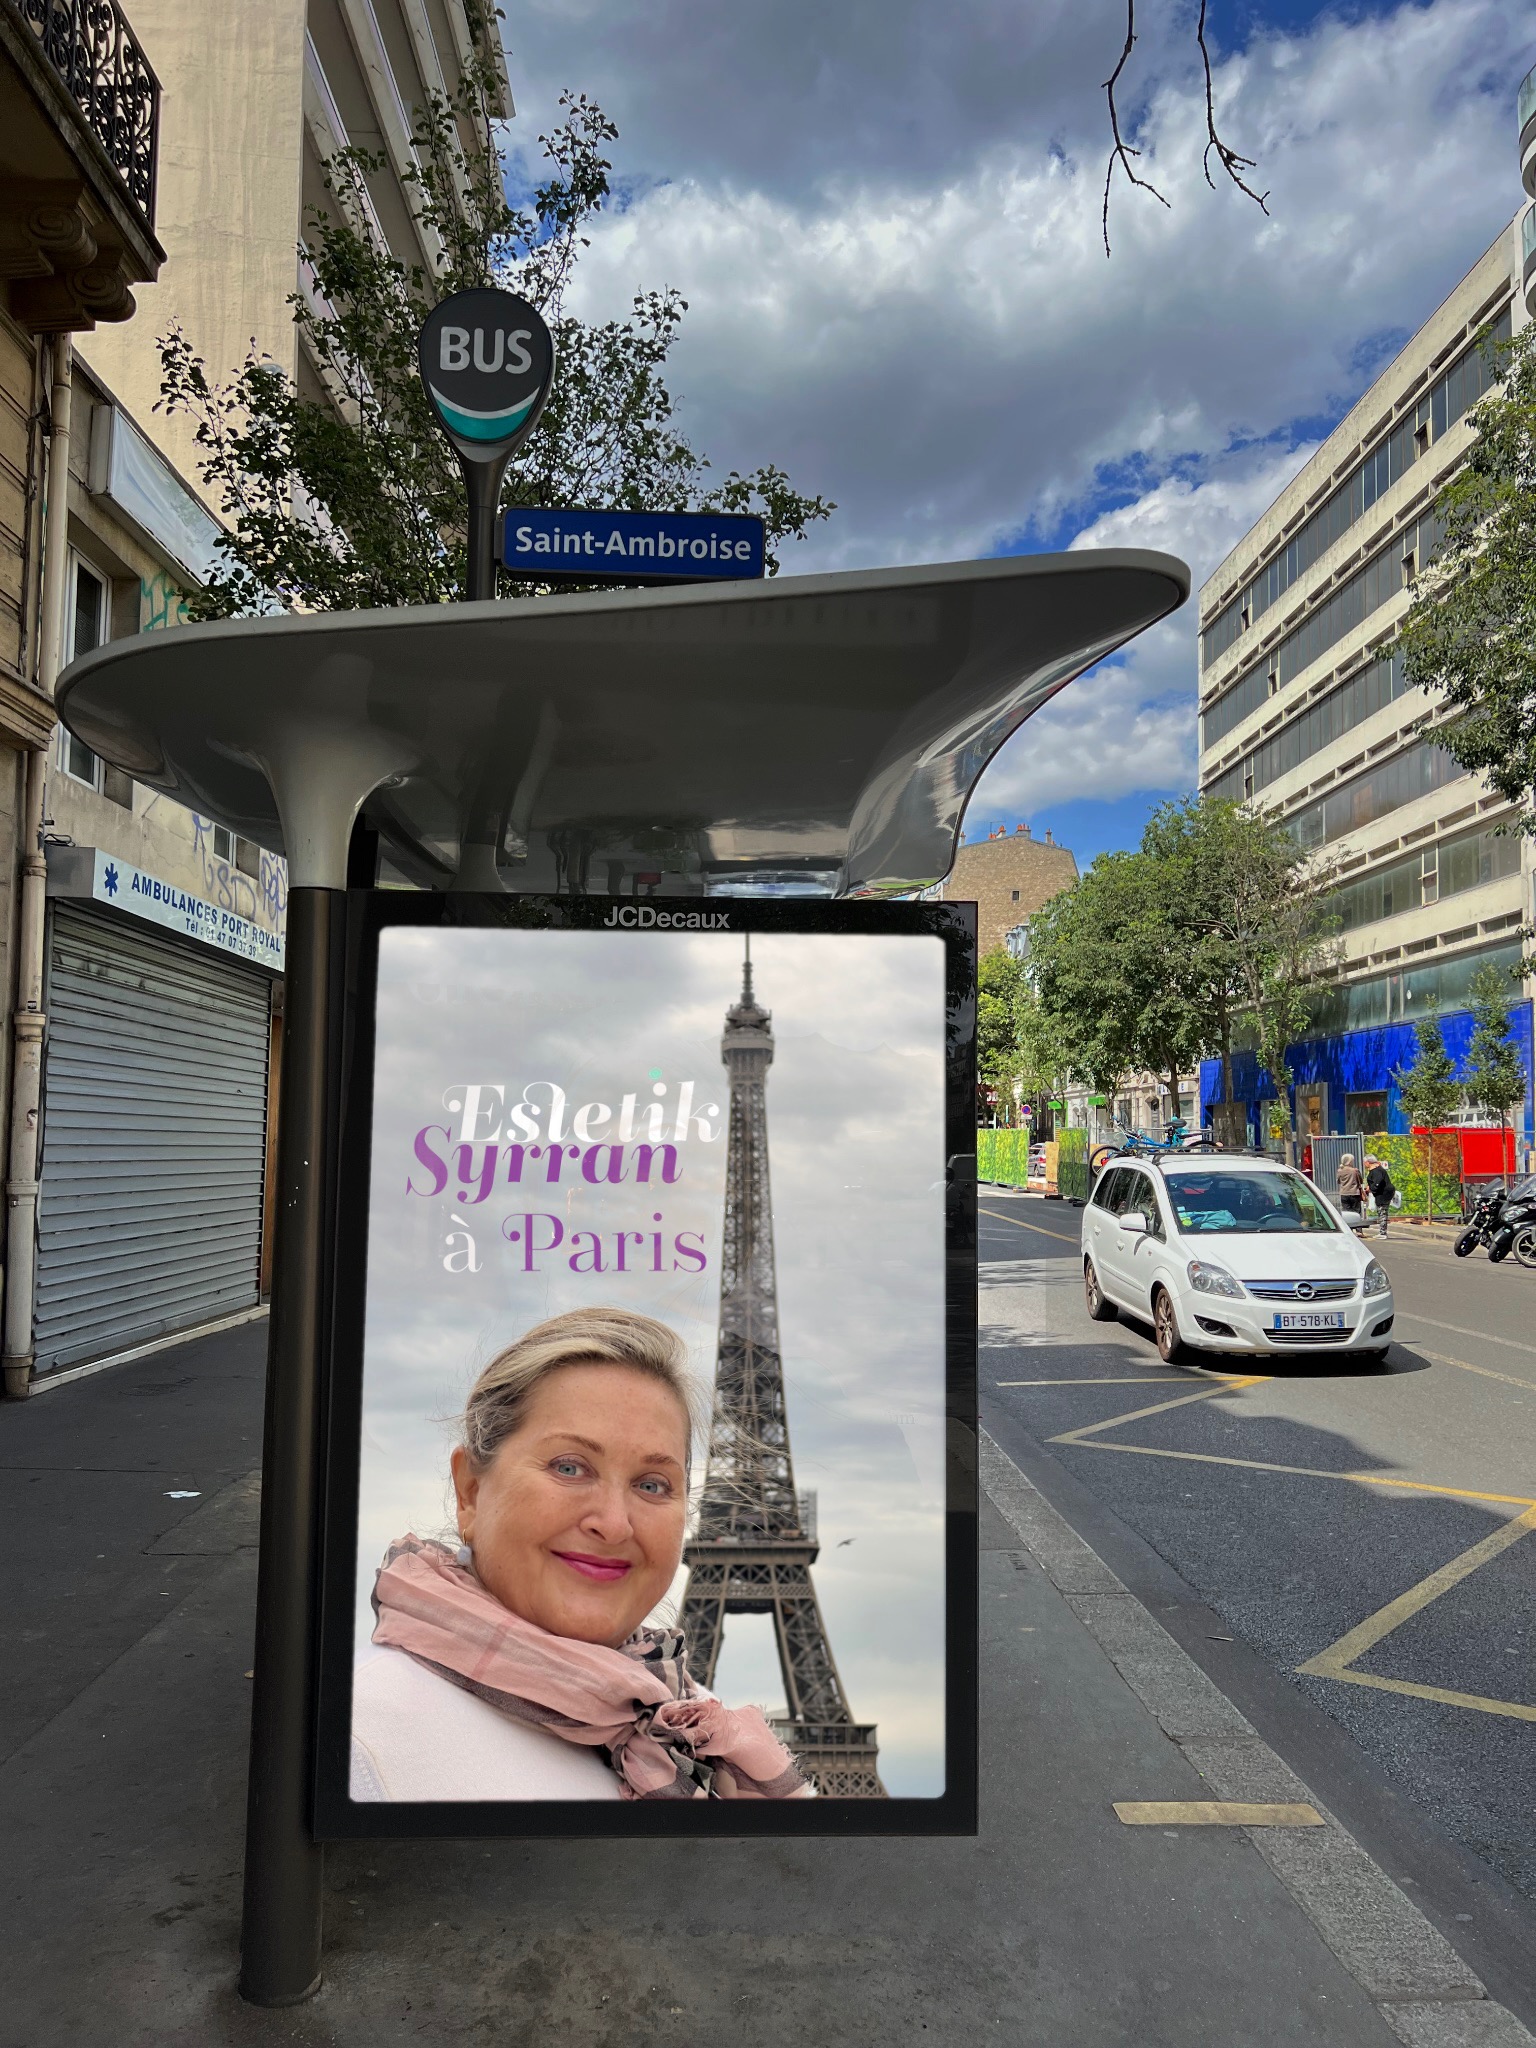 Estetik Syrran à Paris